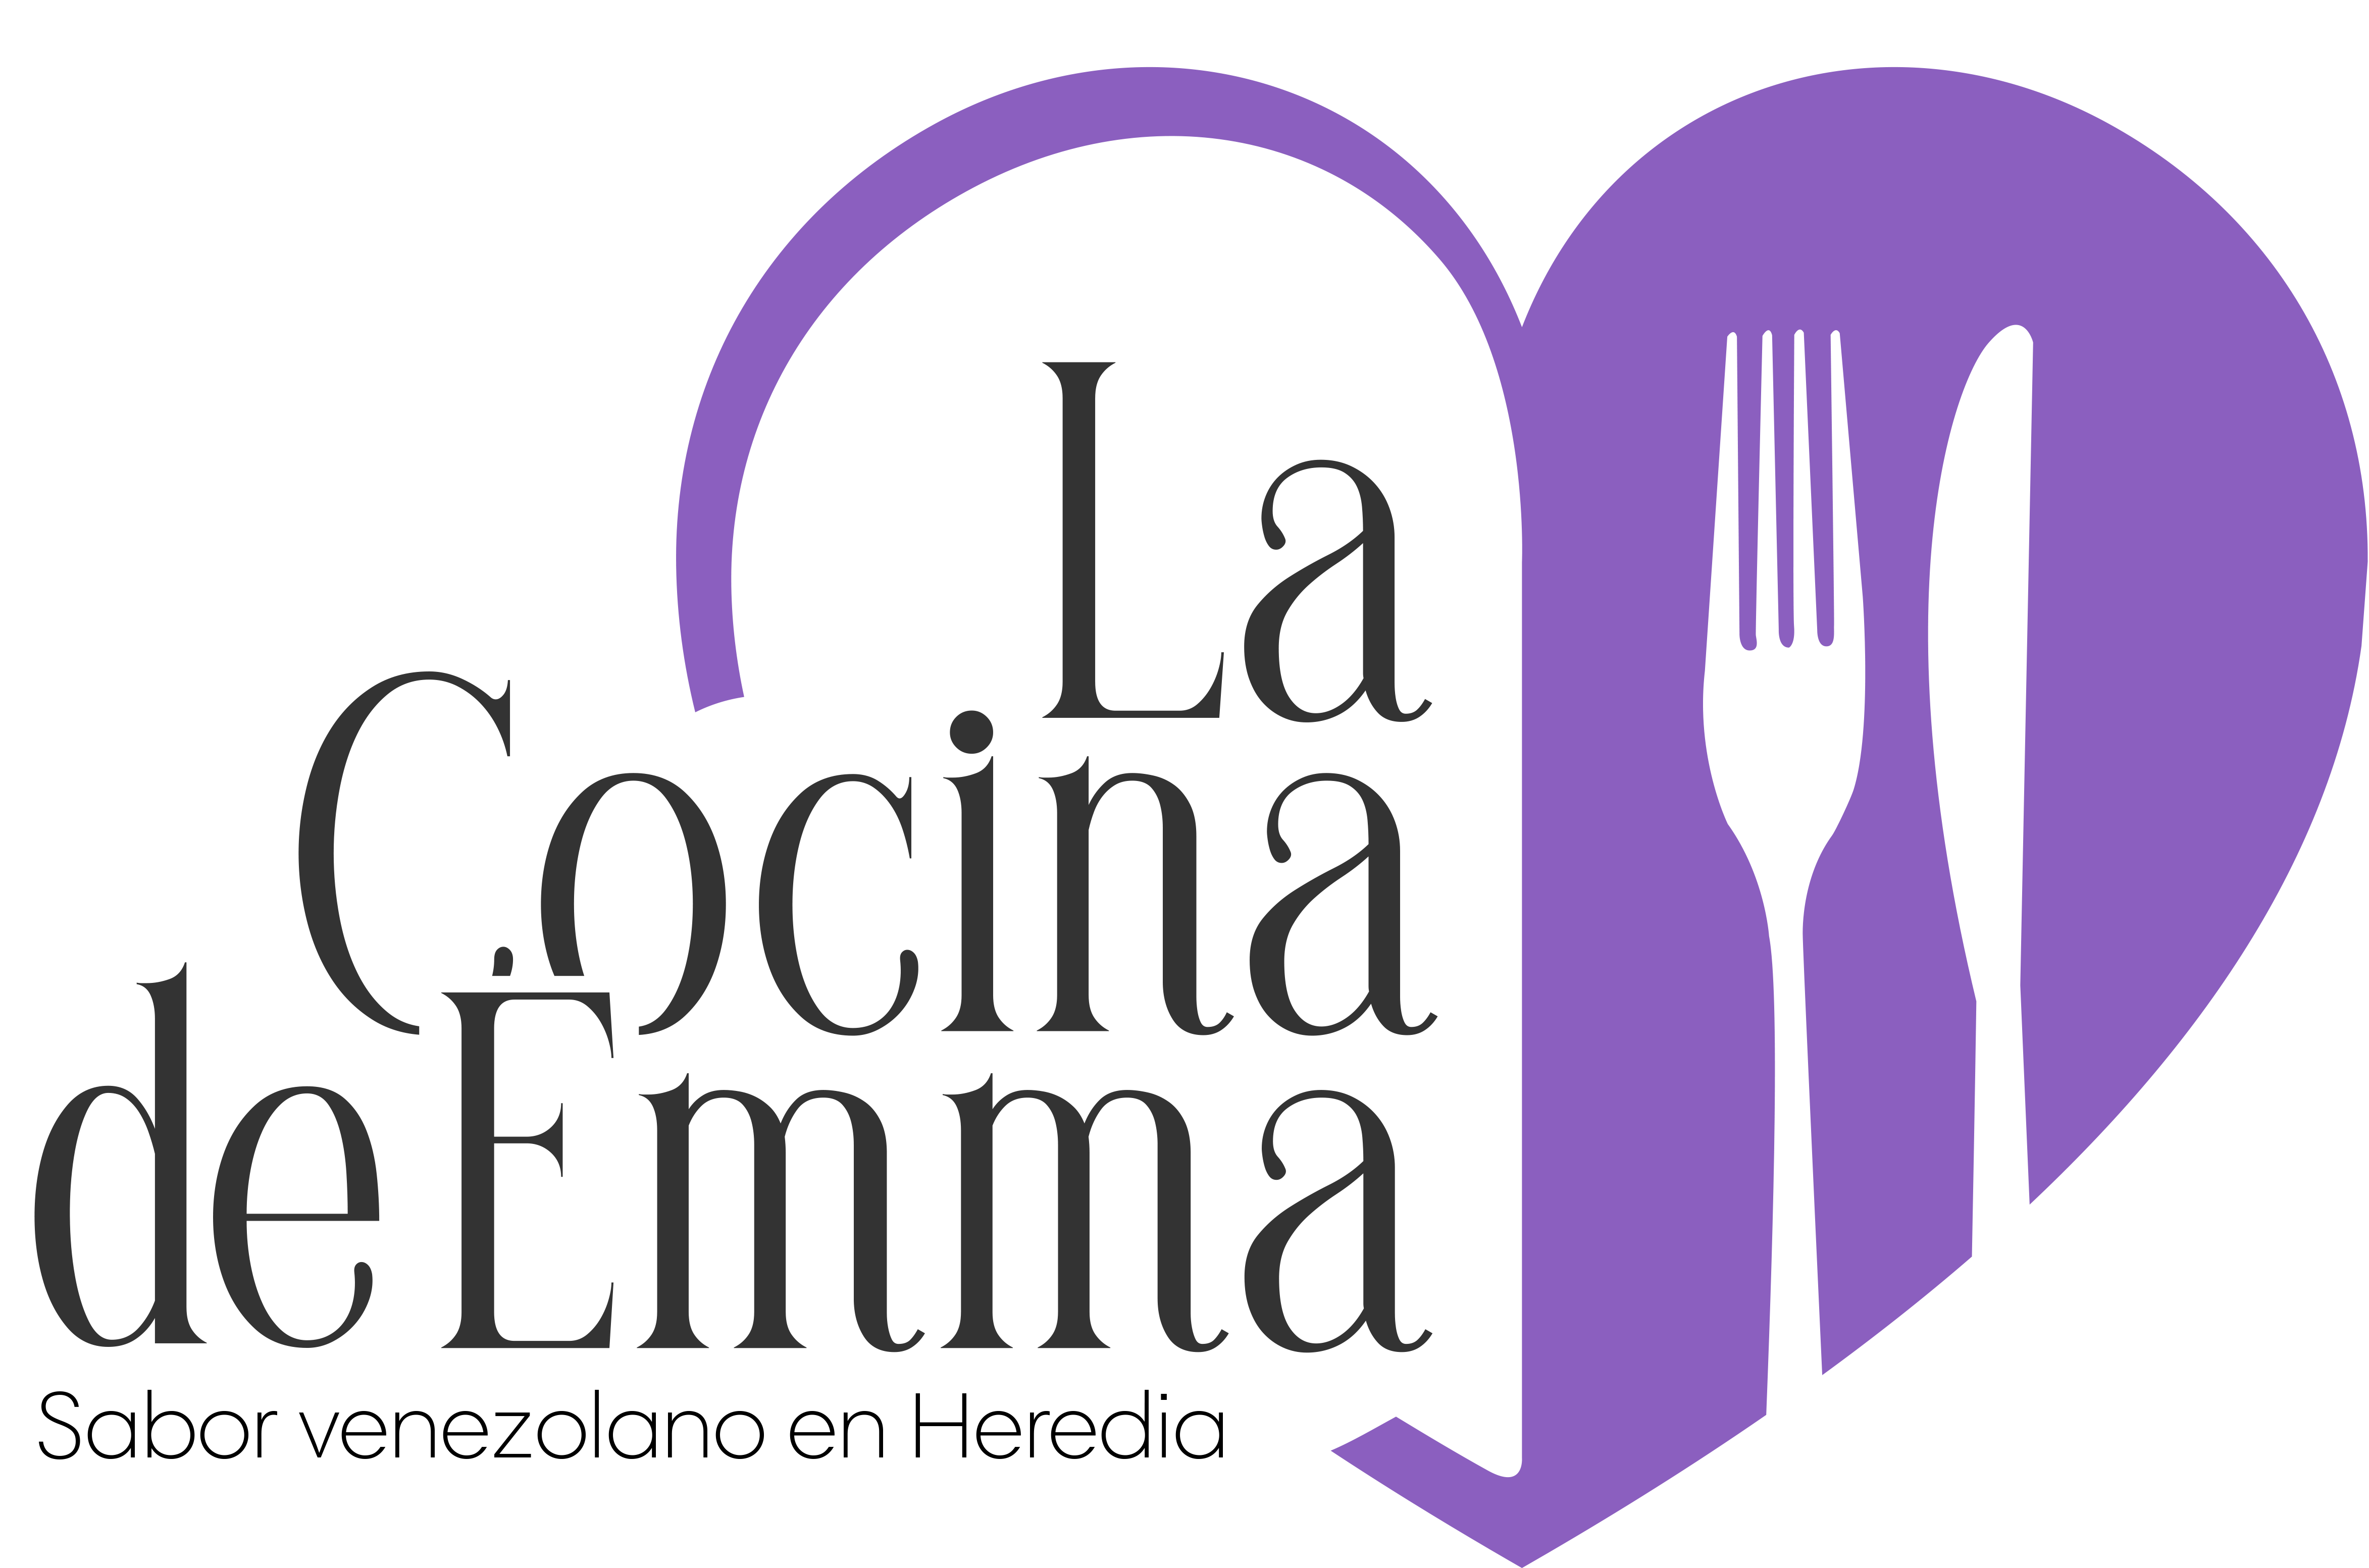 La Cocina de Emma